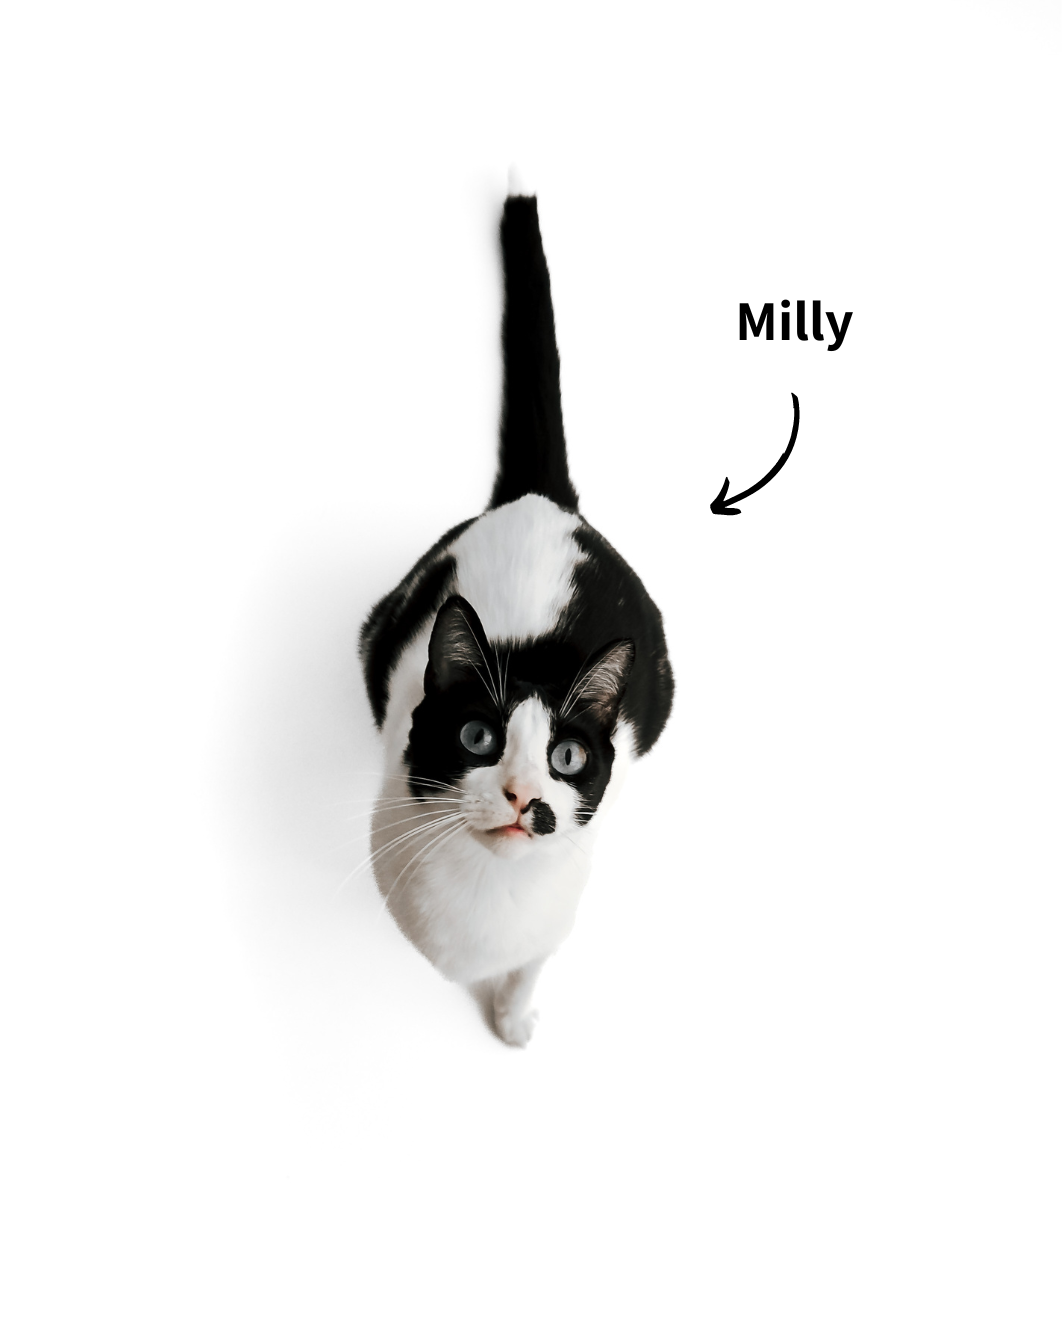 EKH Katze Milly, die Bürokatze und Produkttesterin unserer Produkte für Katzen.